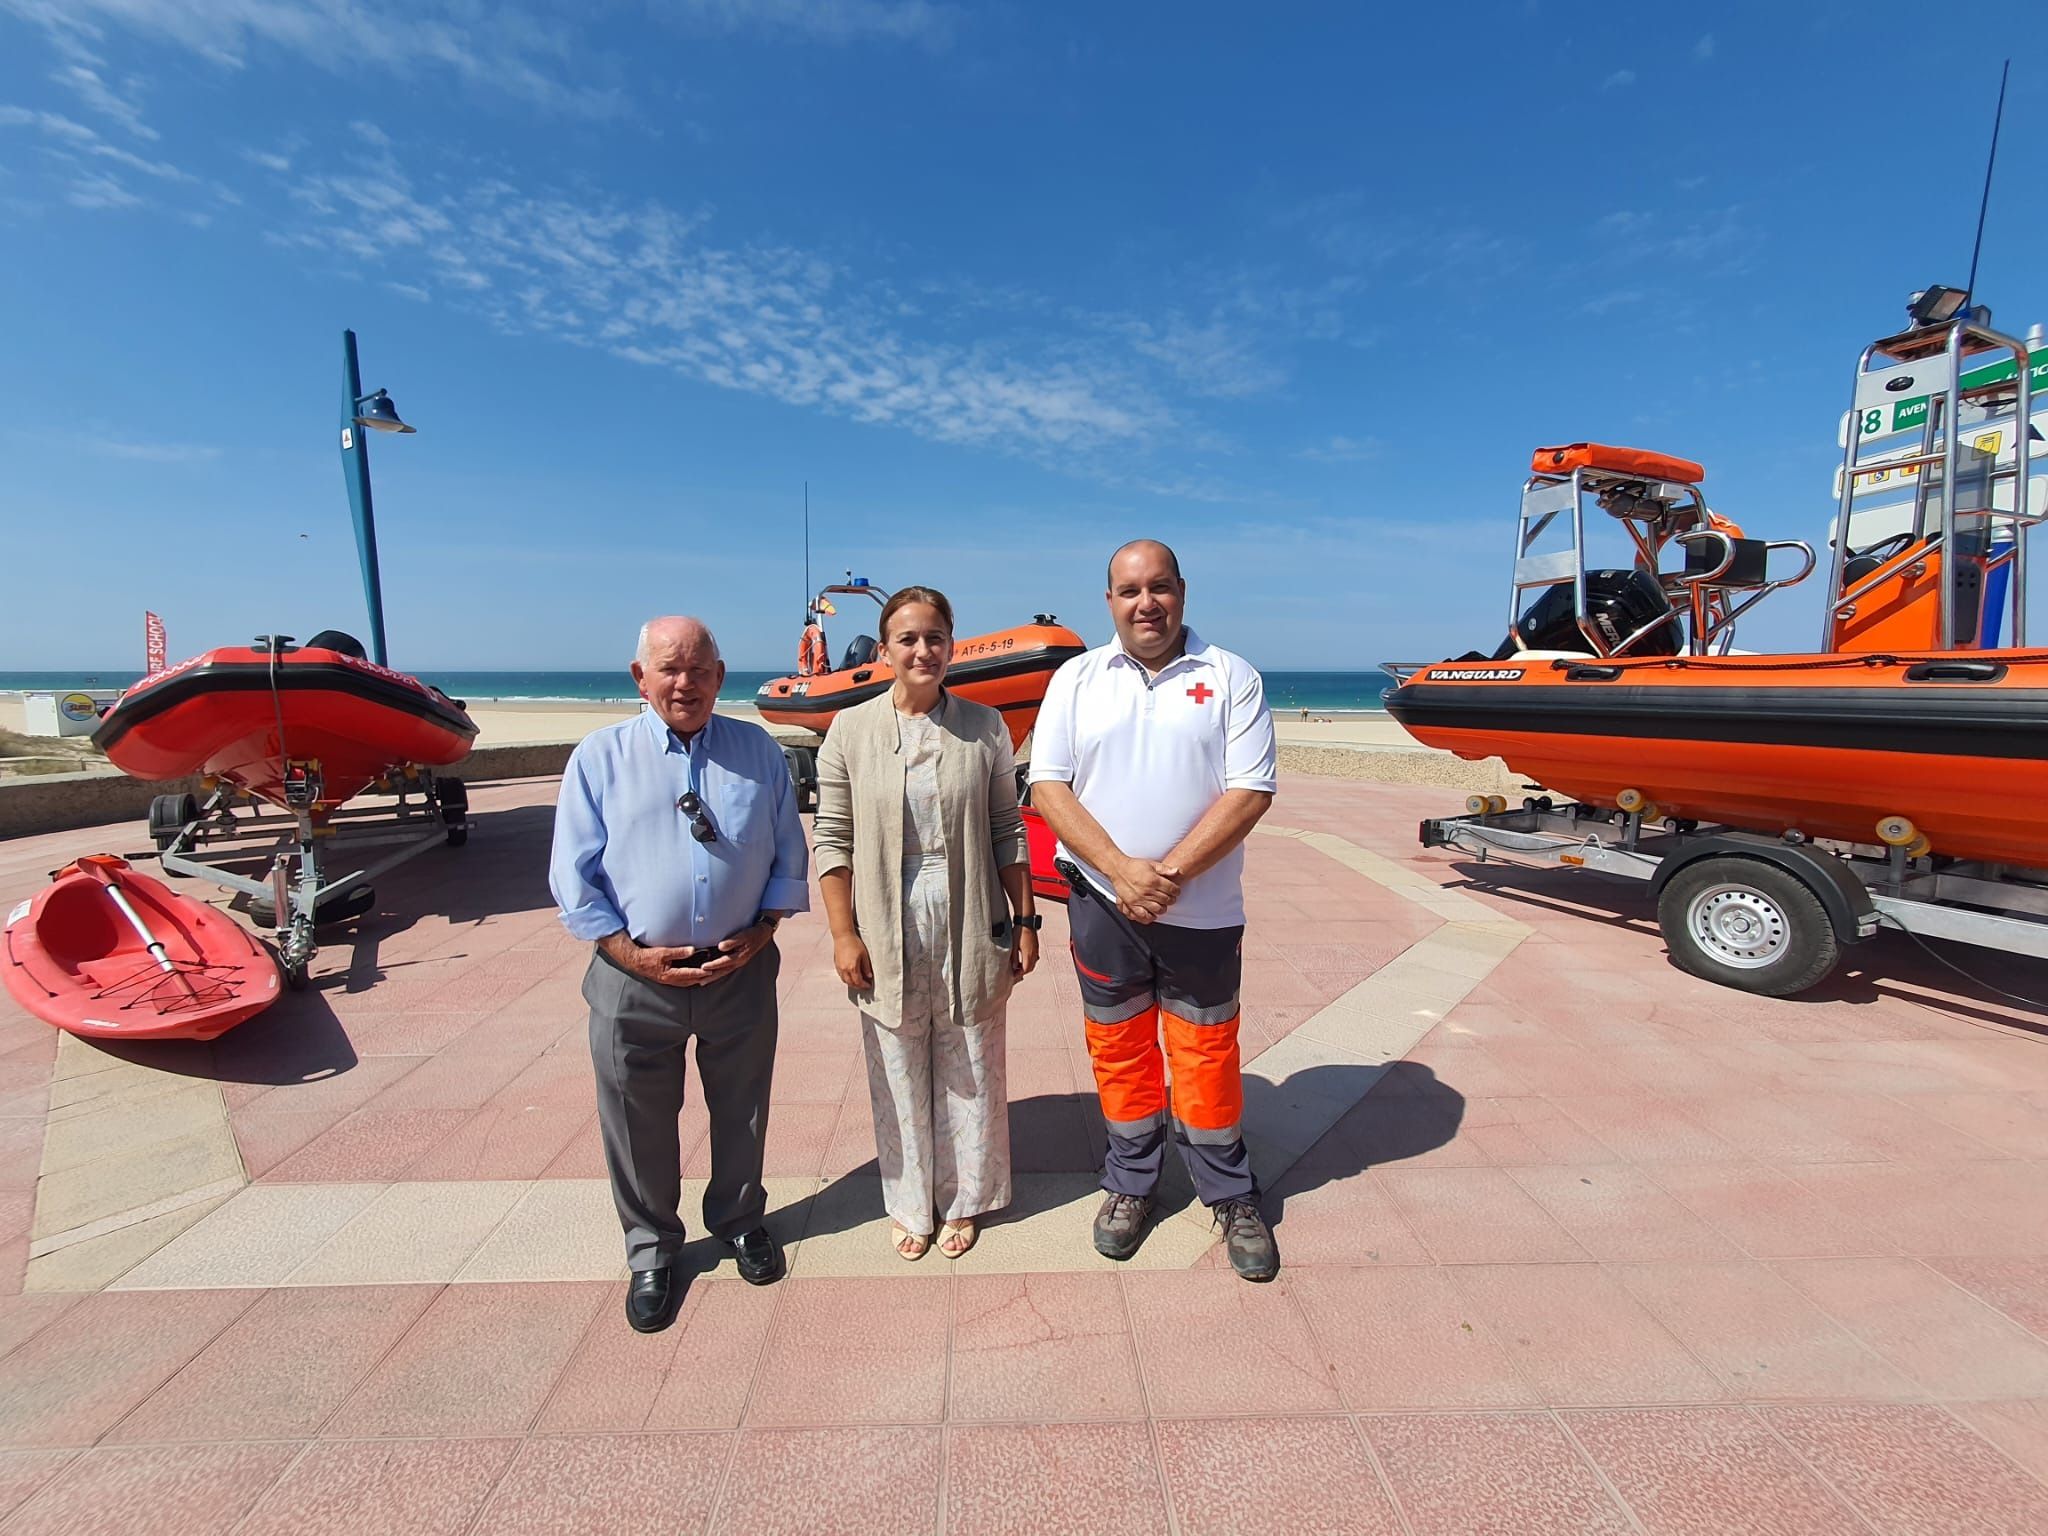 Más medios para el servicio de salvamento y socorrismo en Chiclana. Cruz Roja Española invierte 140.000 euros para la adquisición con dos nuevas motos acuáticas y tres embarcaciones.